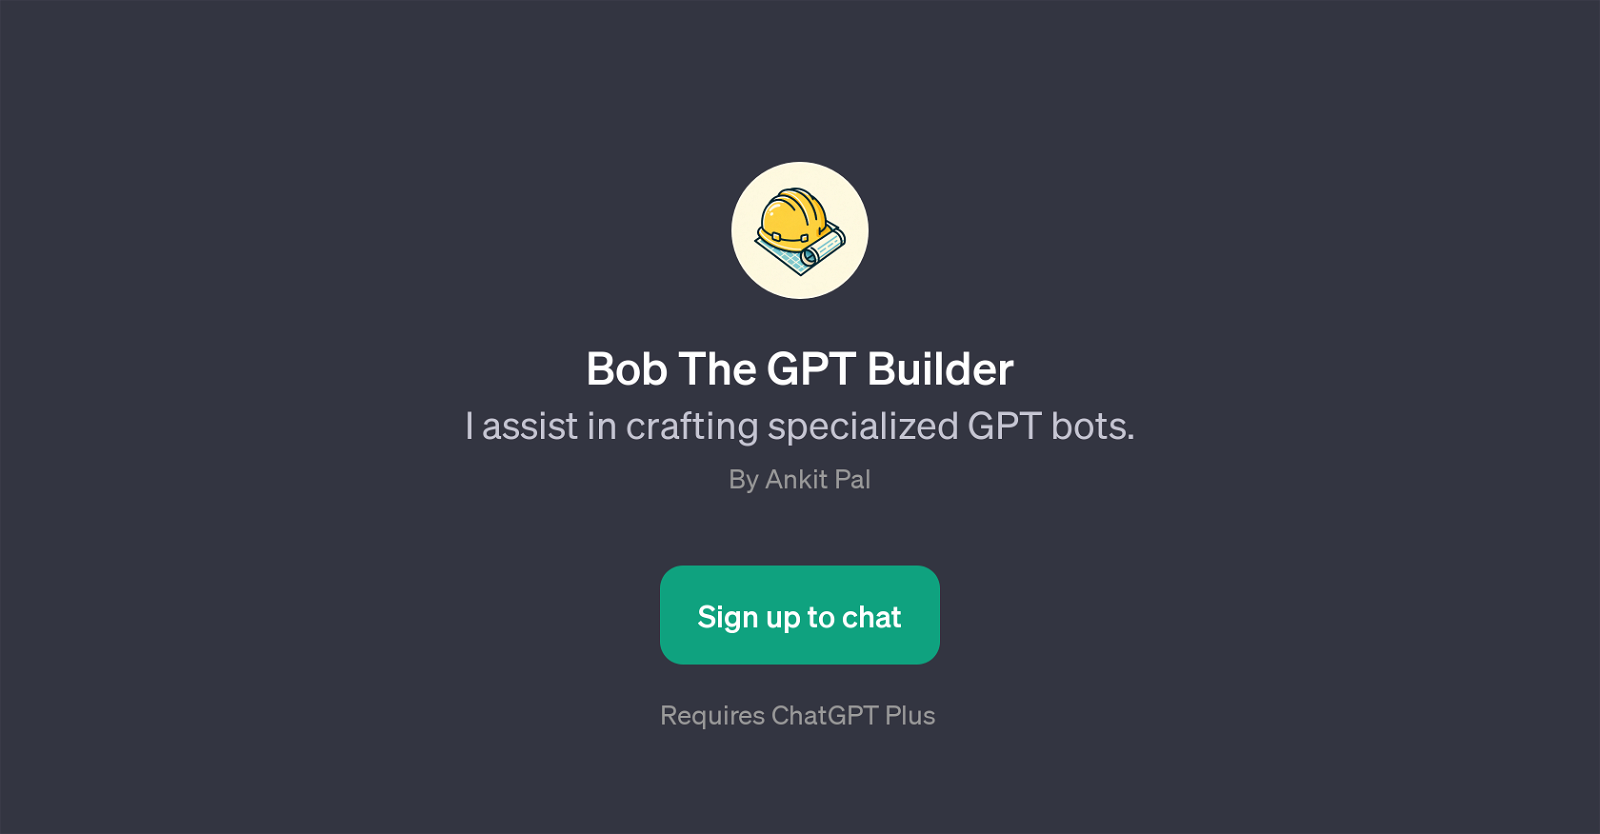 Bob The GPT Builder website